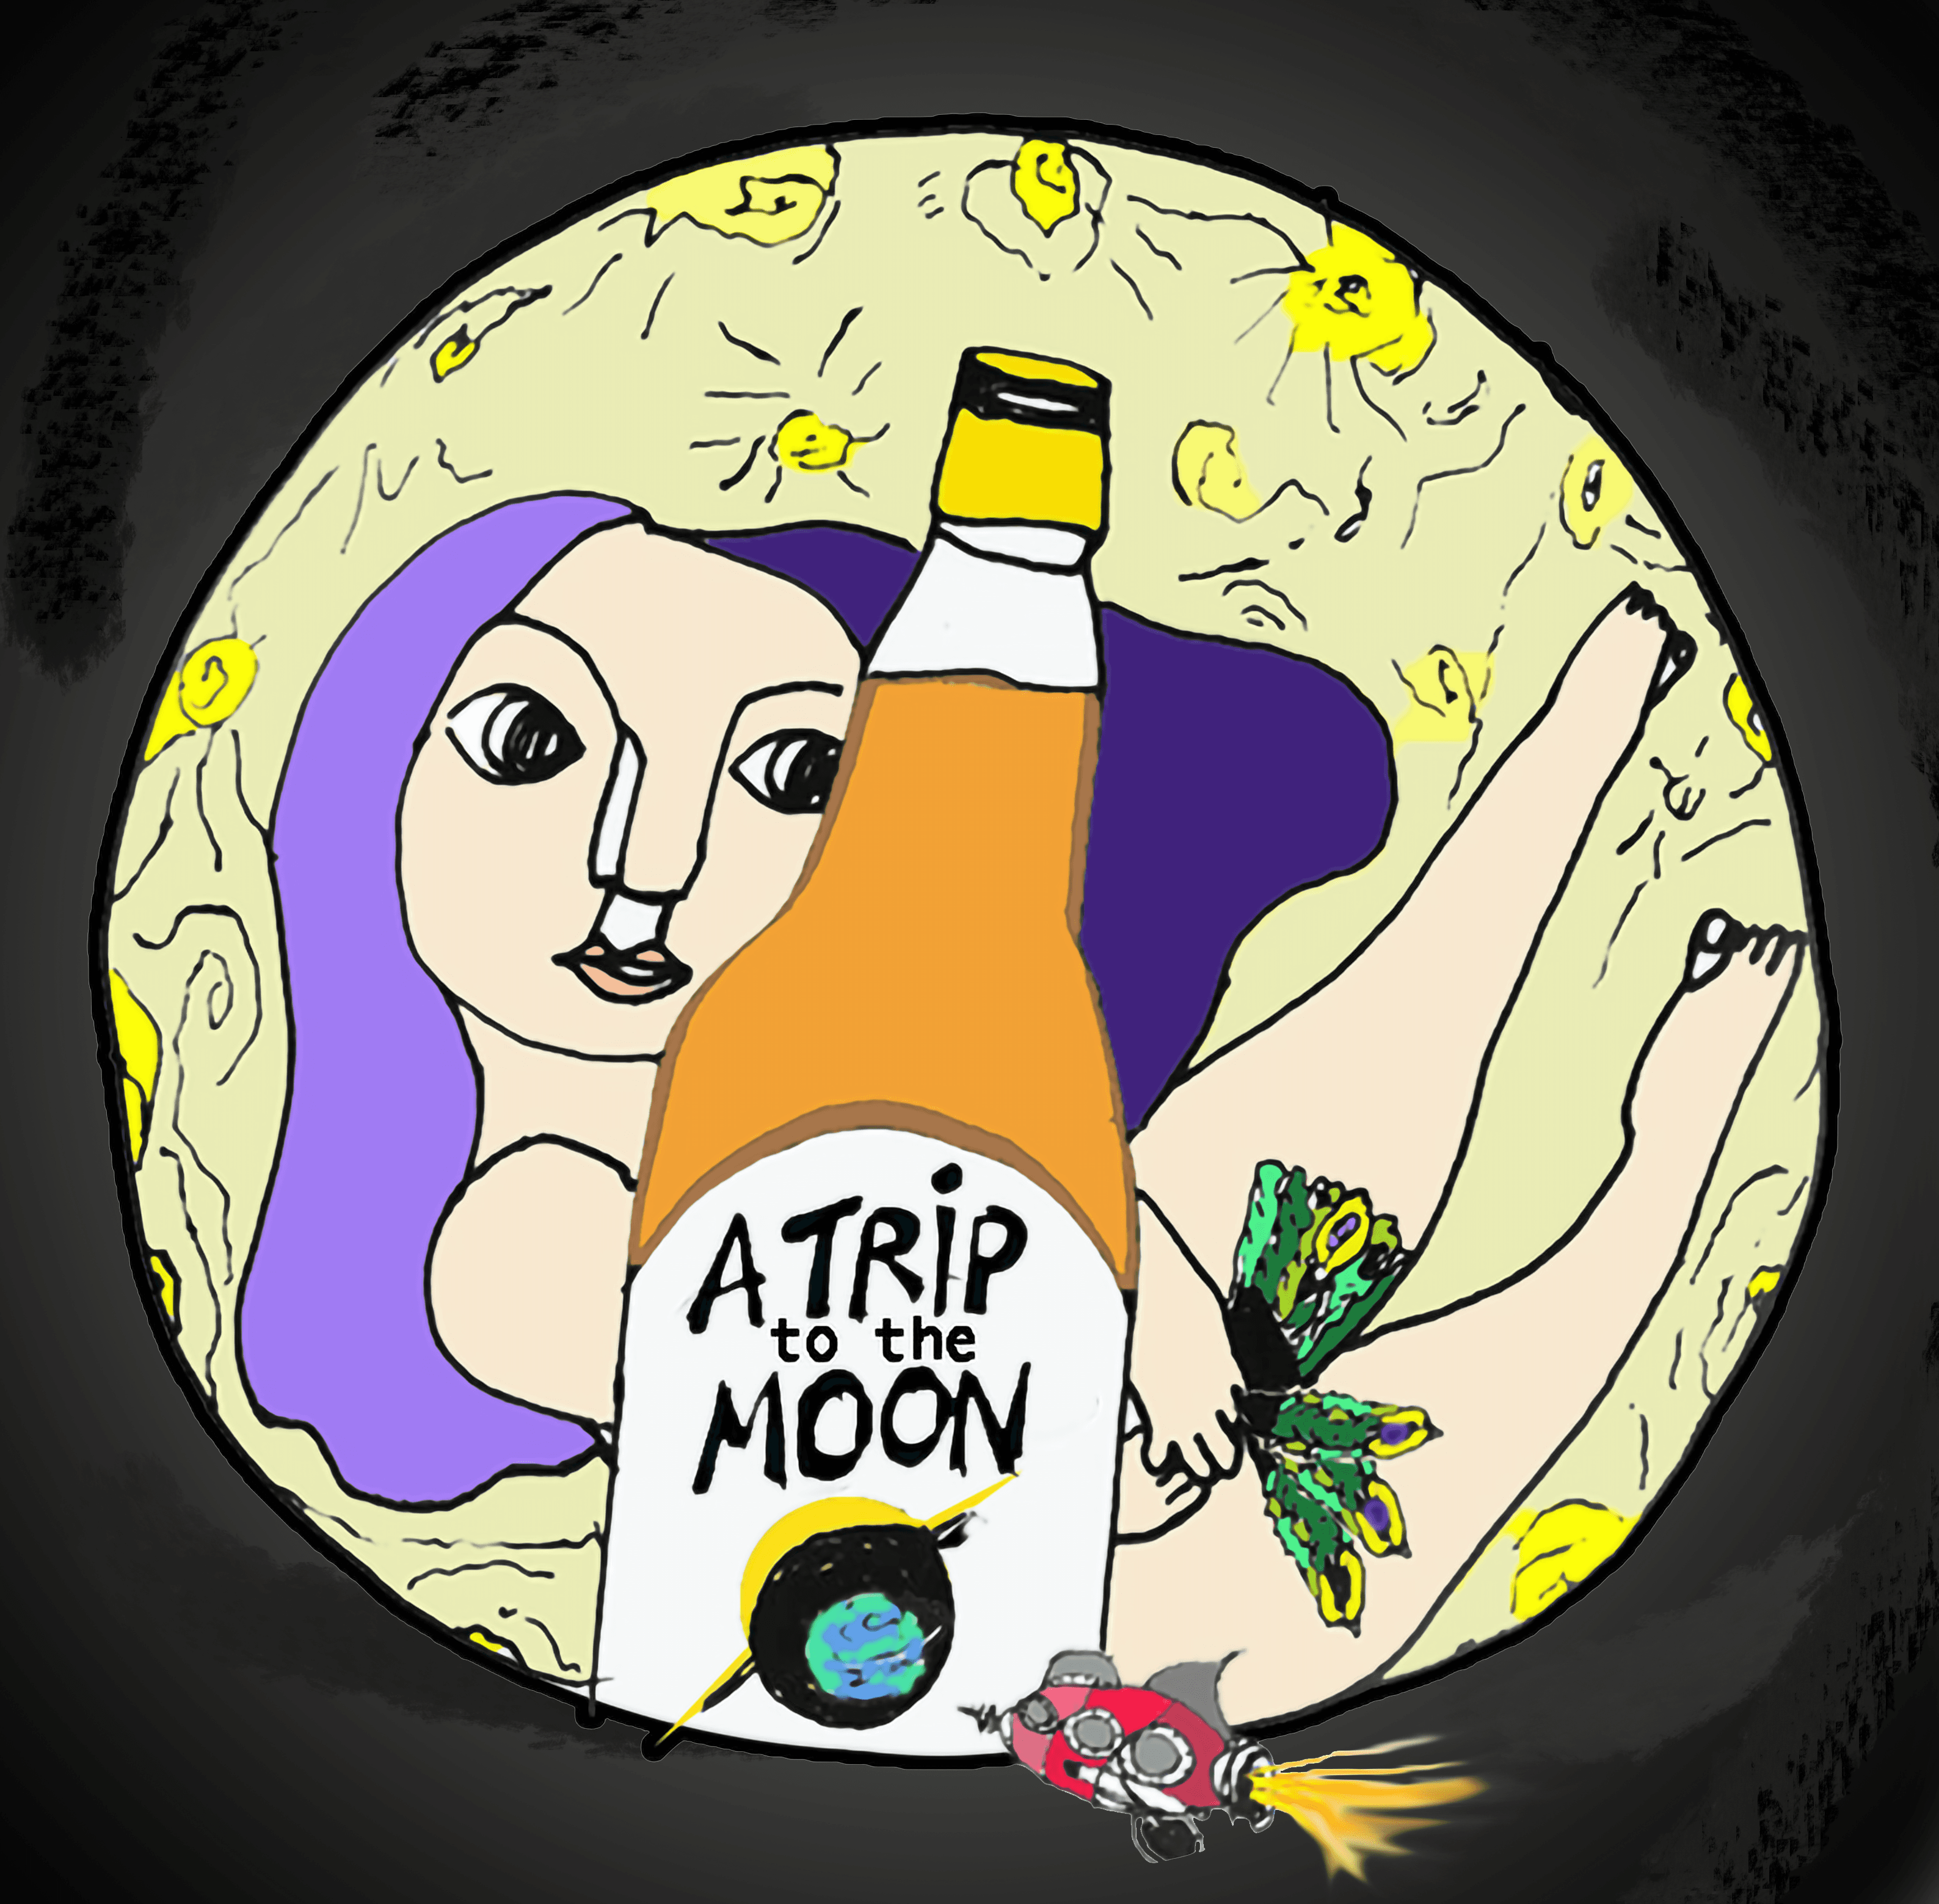 A Trip tp the moon 